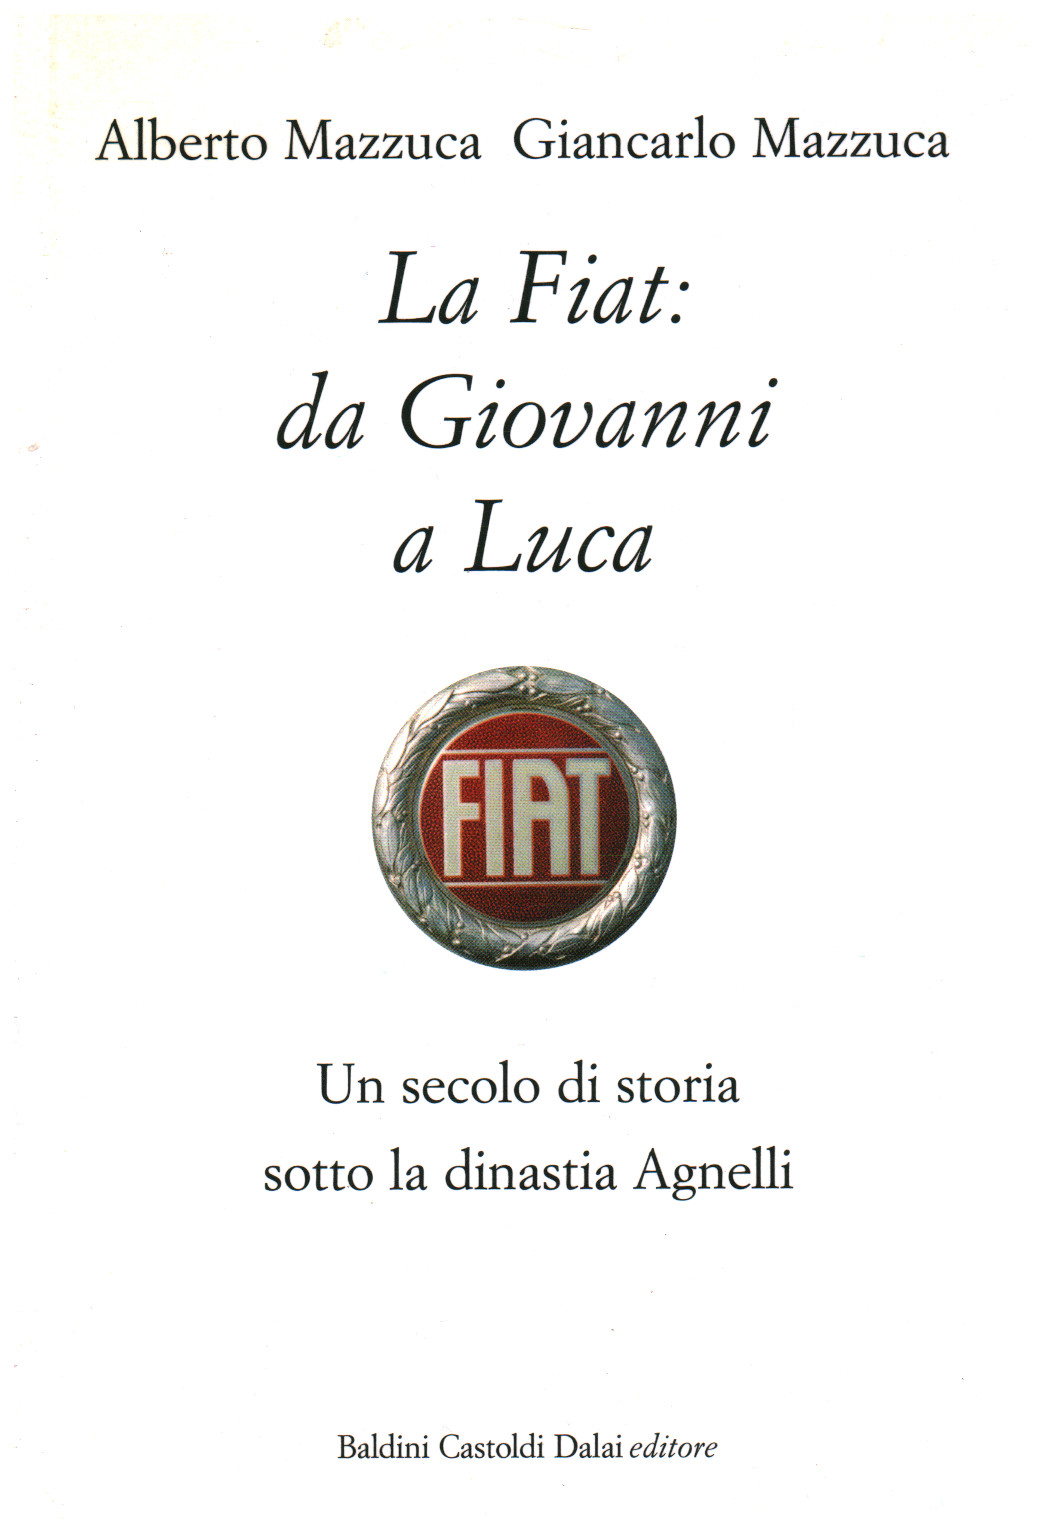 La Fiat: da Giovanni a Luca, s.a.